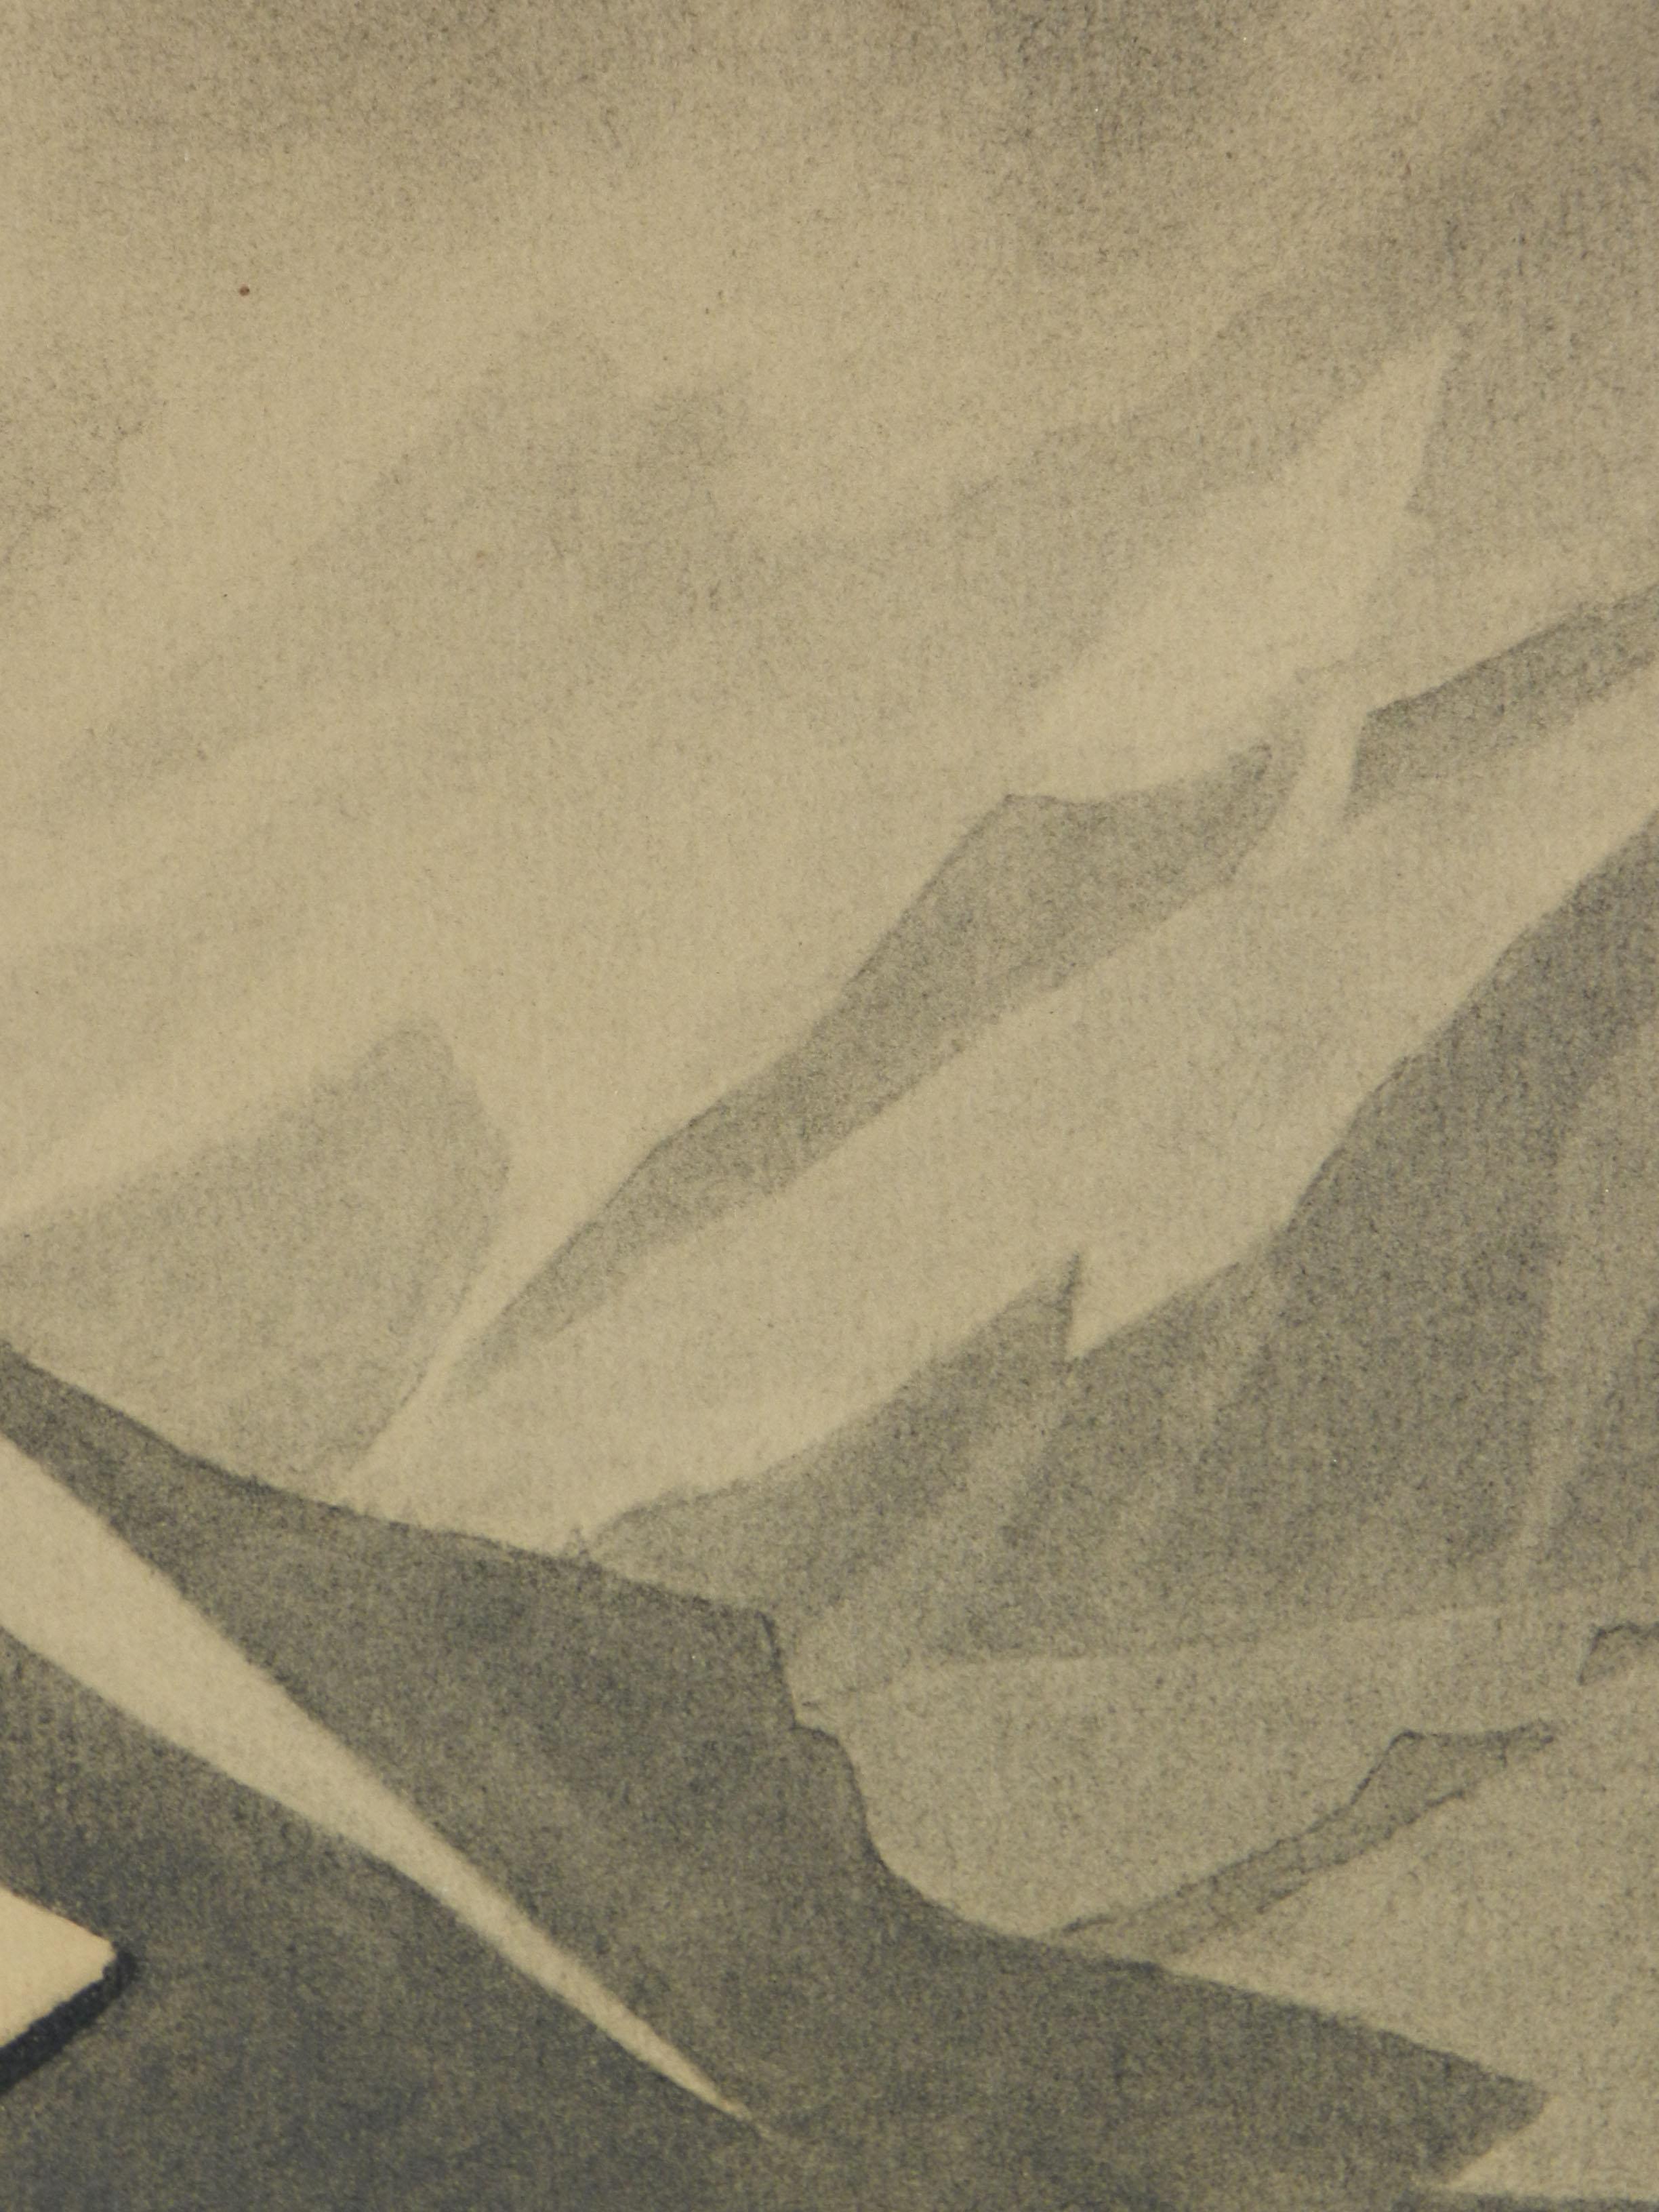 Art Deco Mountain Snow Scene Signed Gisele Berne de Geavisie c1933 3